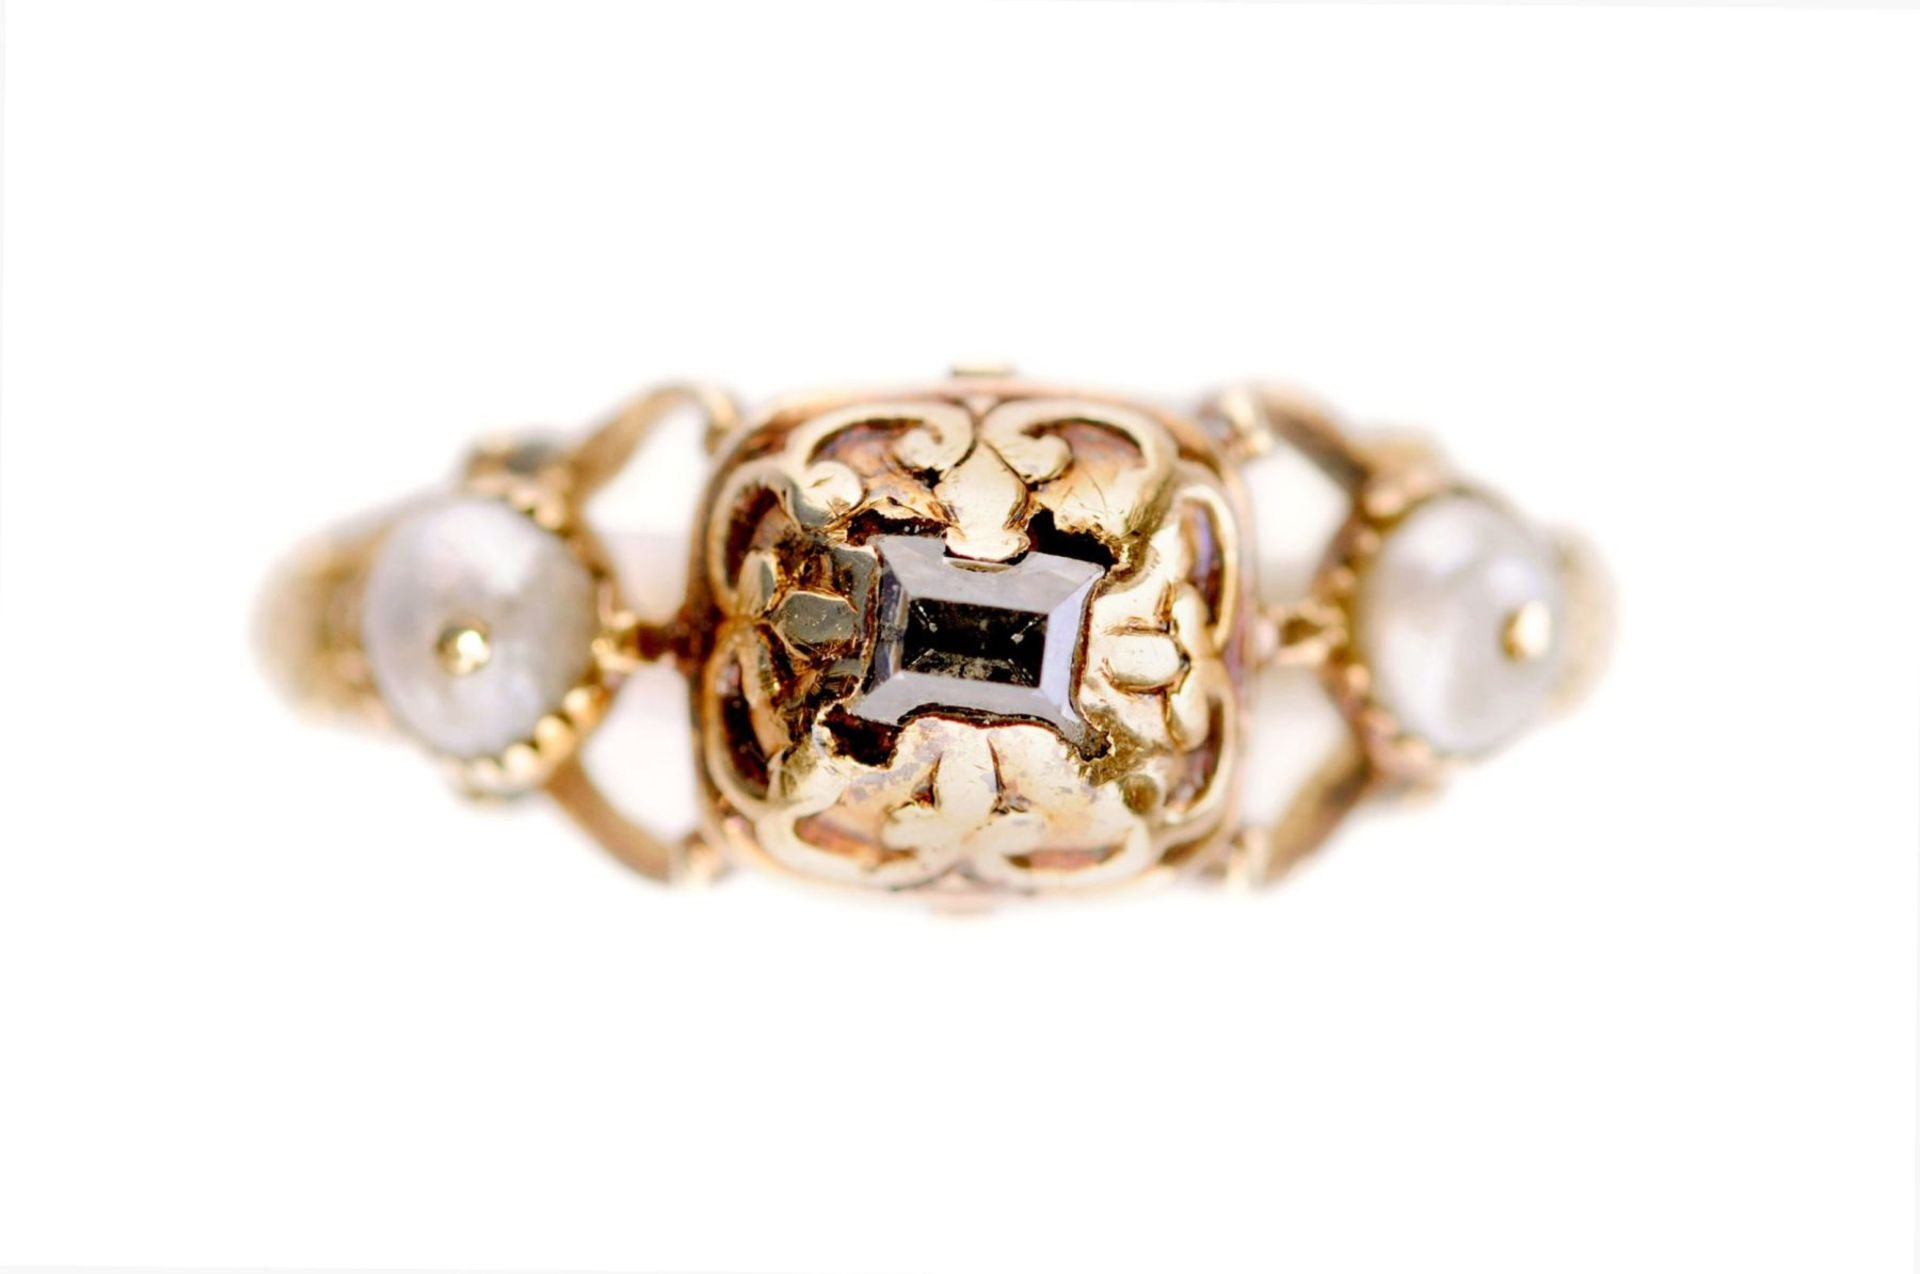 Renaissance-Ring mit Diamant und Perlen. Westeuropäisch. Wohl spätes 16. Jh./Frühes 17. Jh.14K - Image 6 of 6